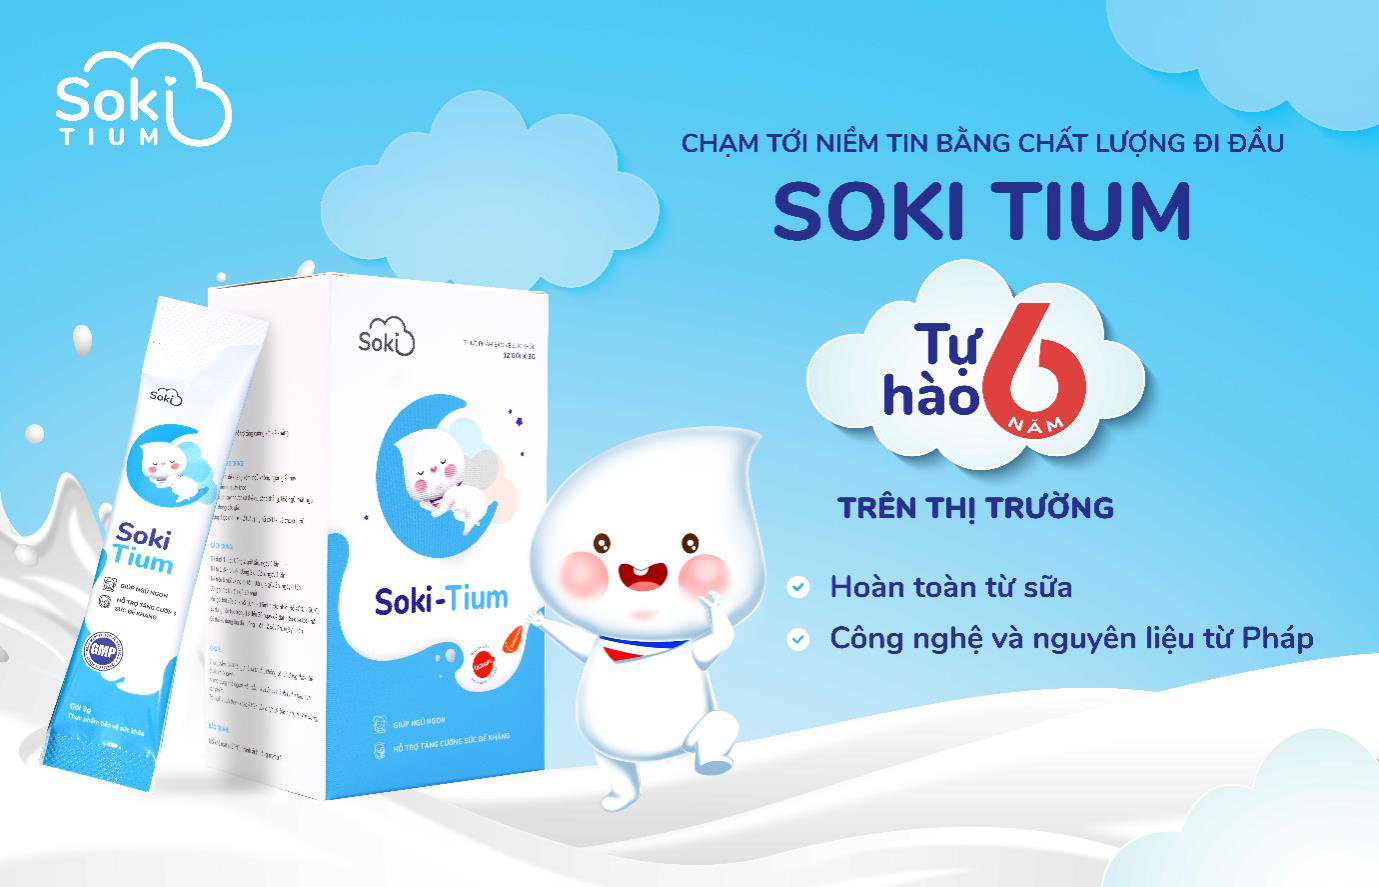 Soki Tium “thay áo mới”, hứa hẹn mang đến trải nghiệm tối ưu cho khách hàng - Ảnh 2.